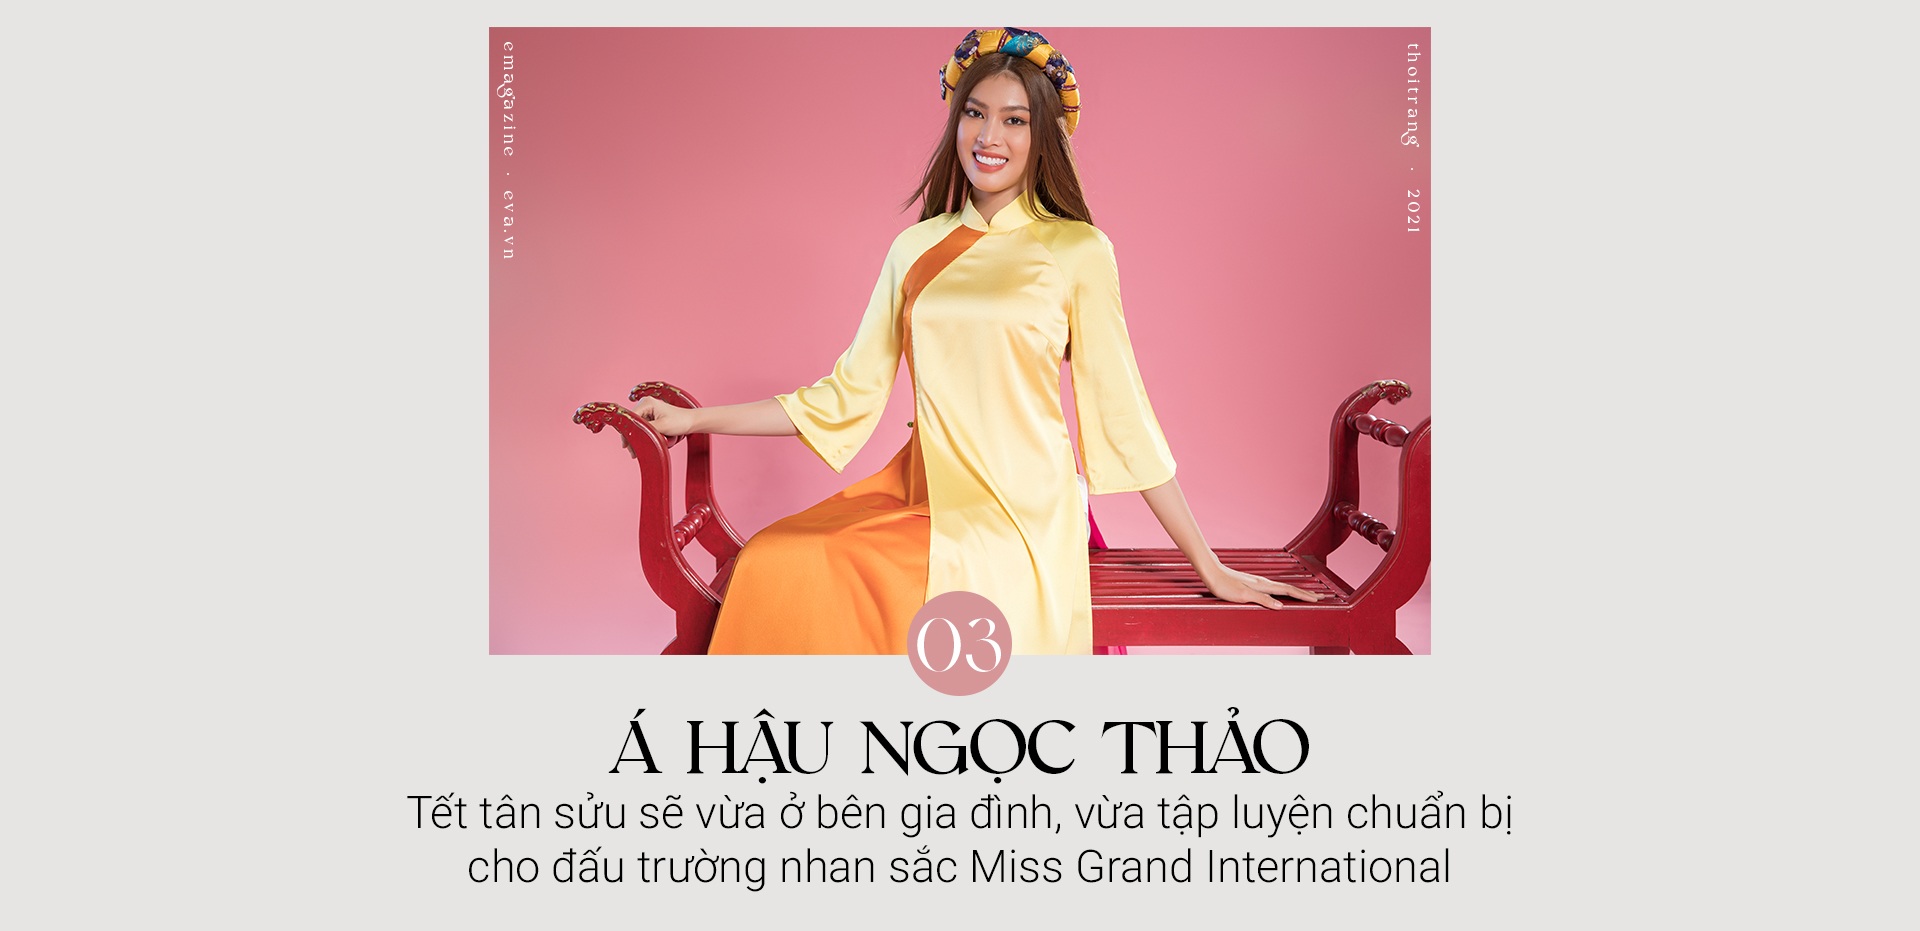 Gặp gỡ top 3 Hoa Hậu Việt Nam ngày đầu năm: Nhan sắc rực rỡ hơn hoa mùa Xuân - 18